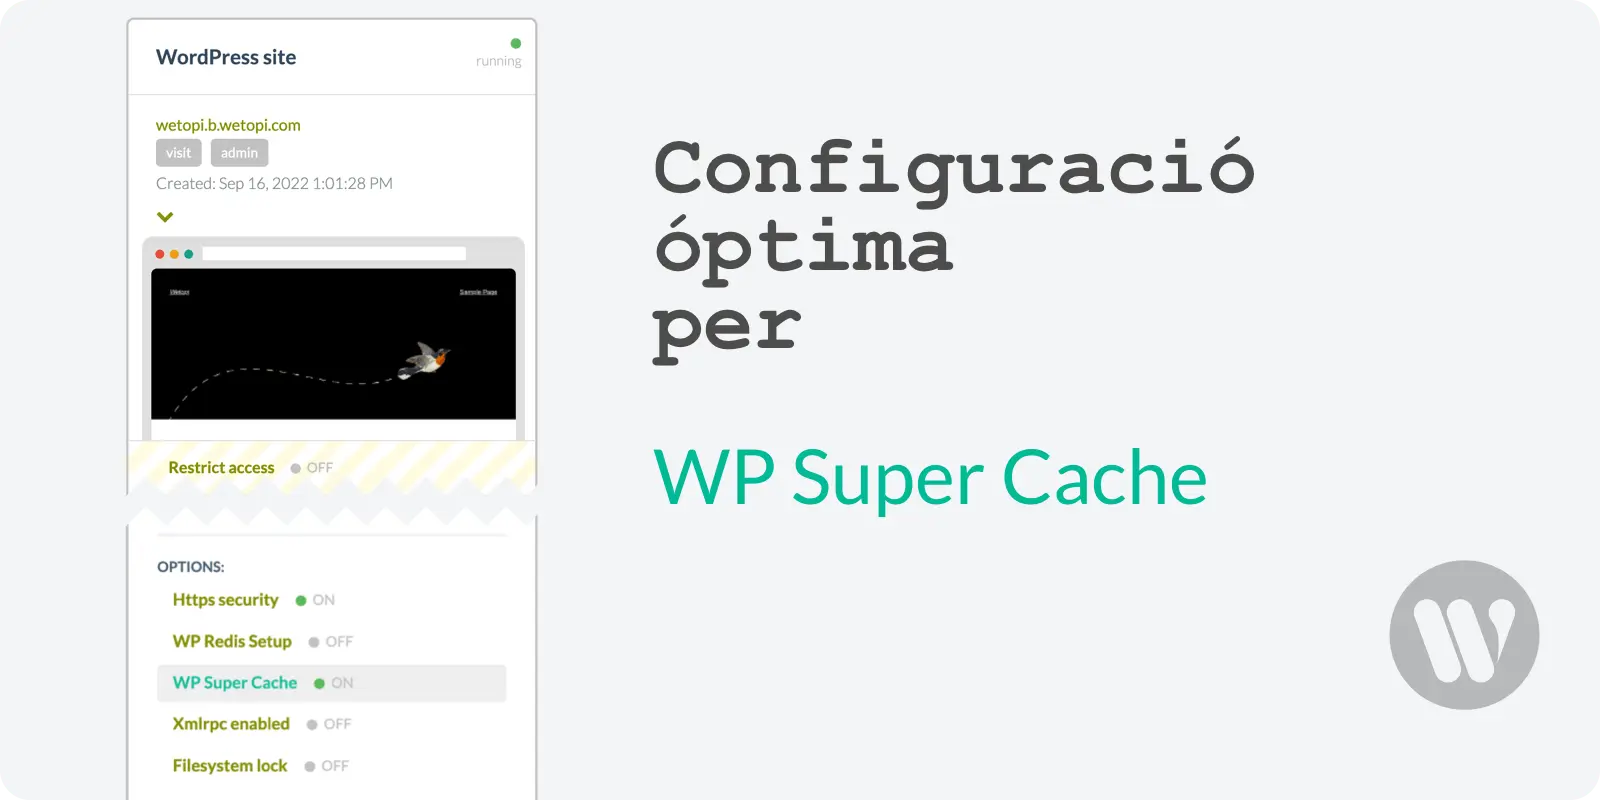 Configuració óptima per WP Super Cache